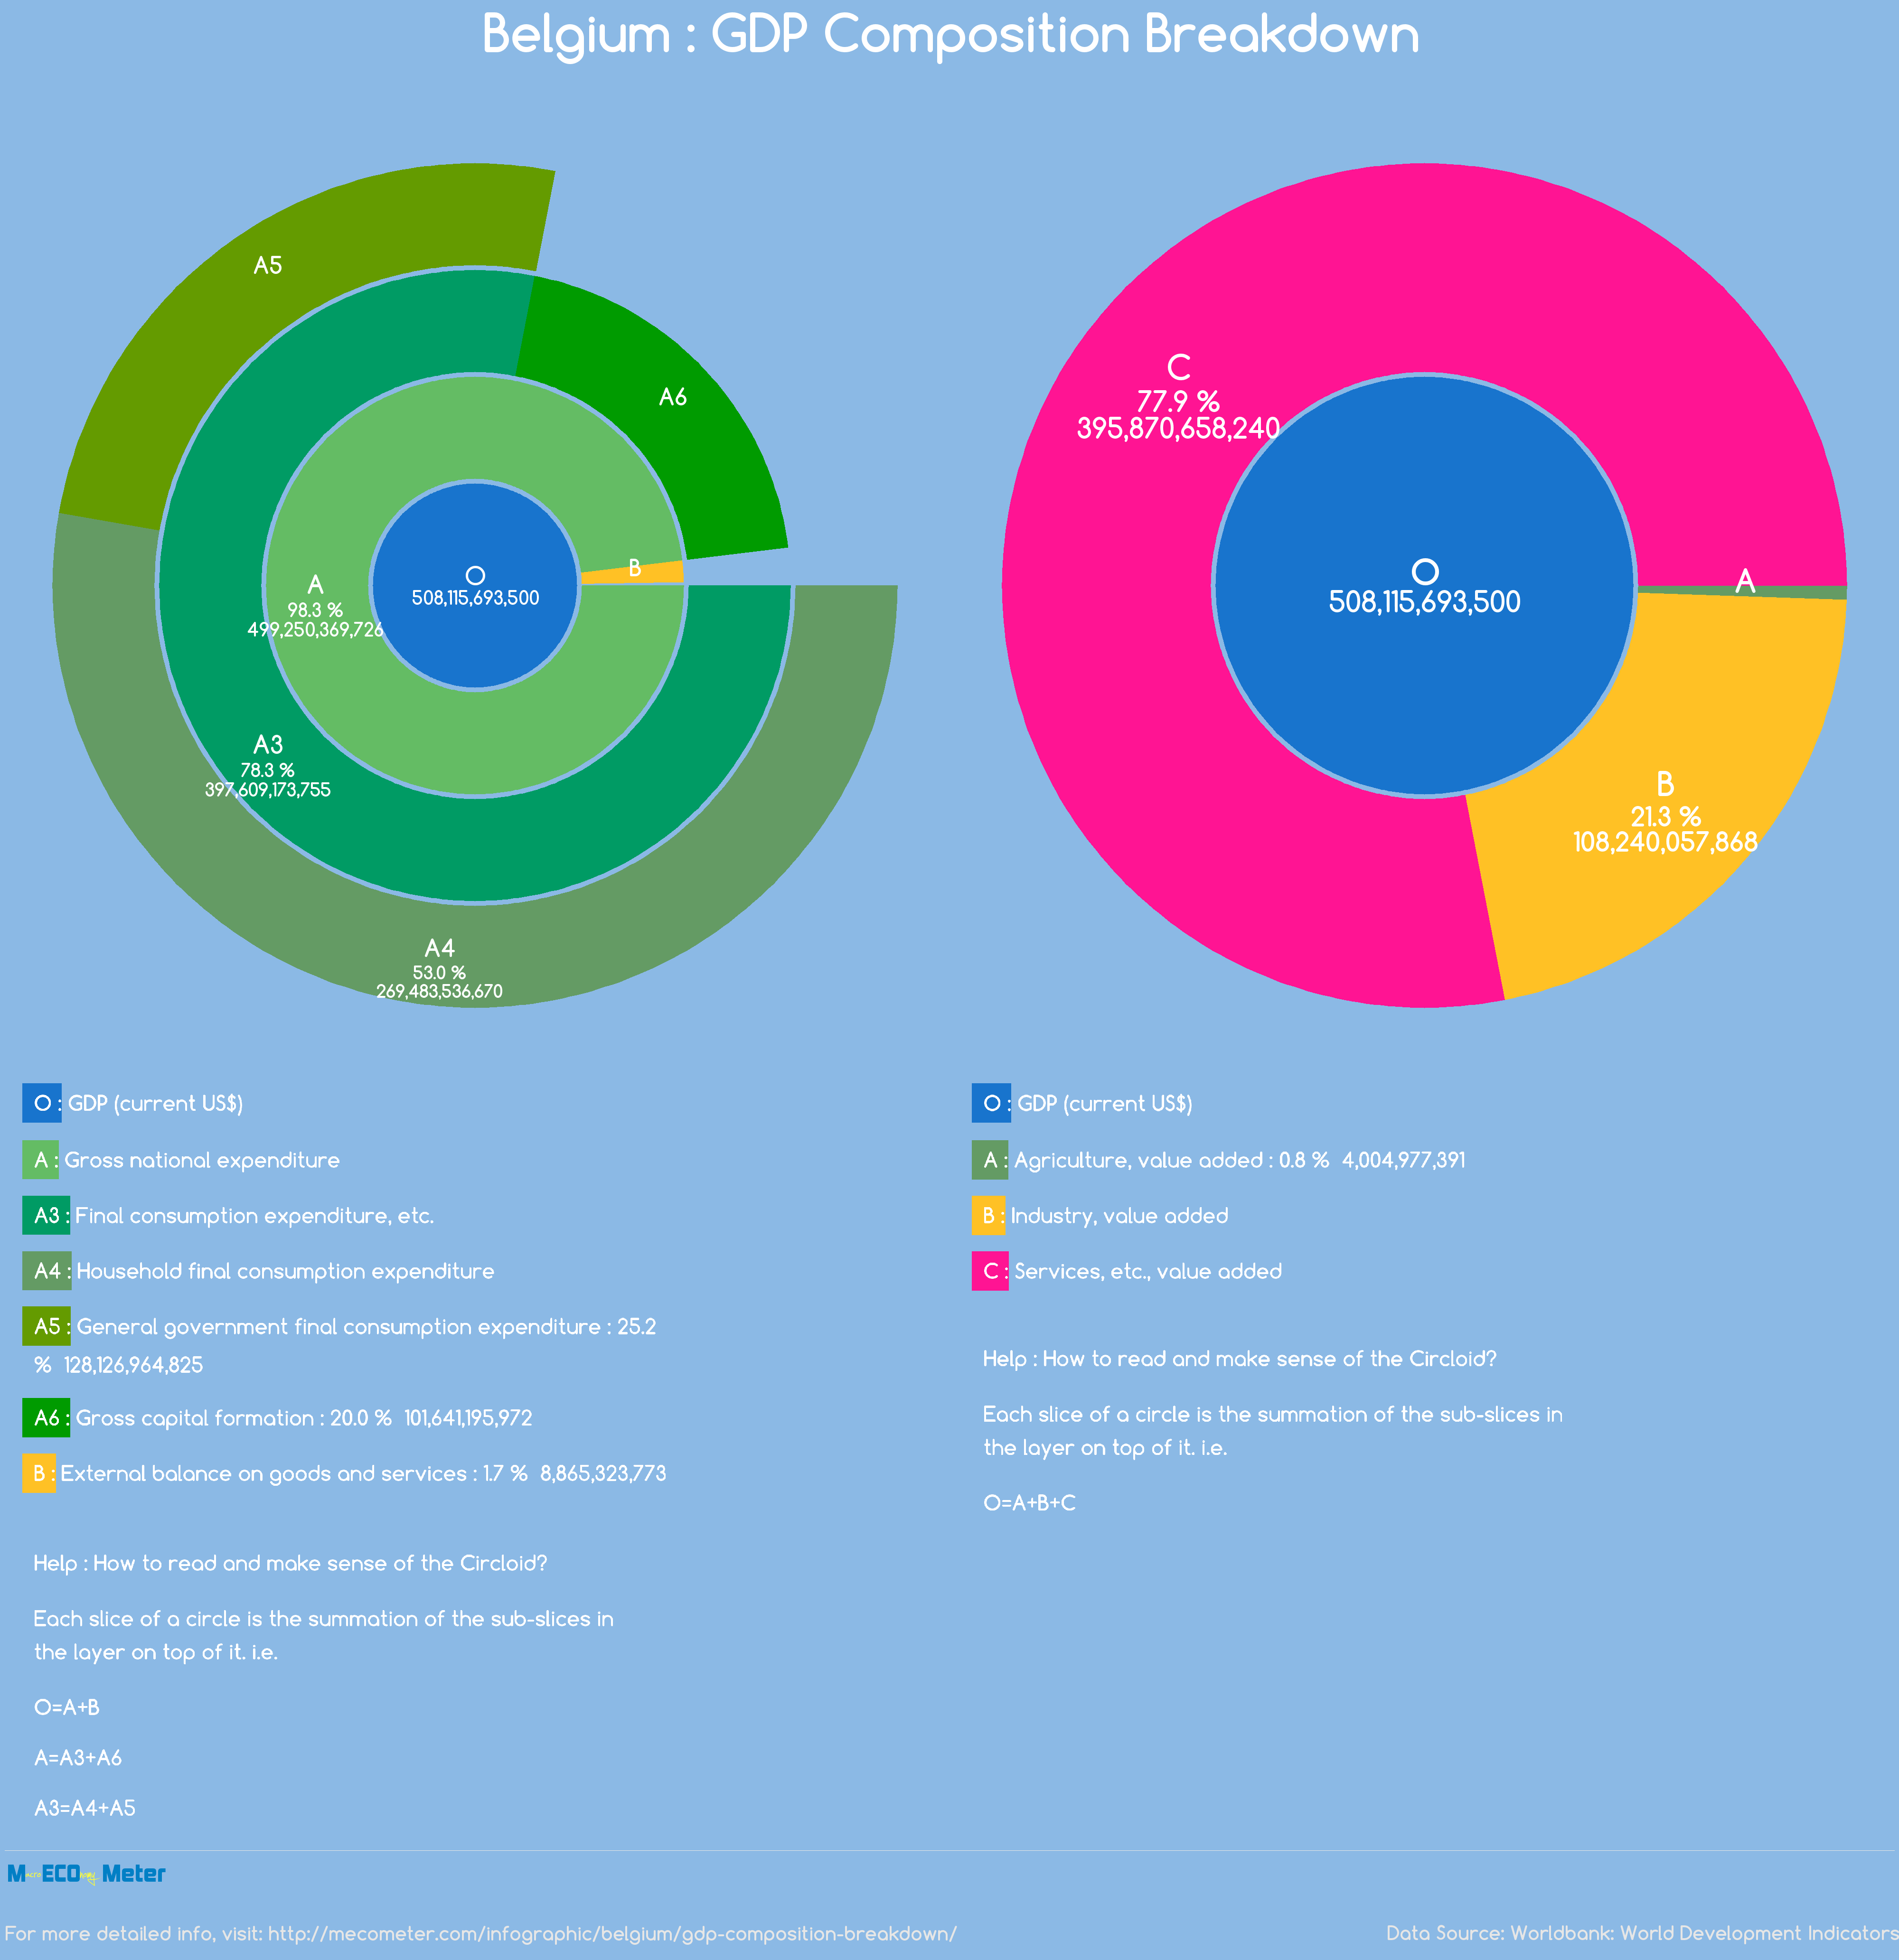 Belgium : GDP Composition Breakdown